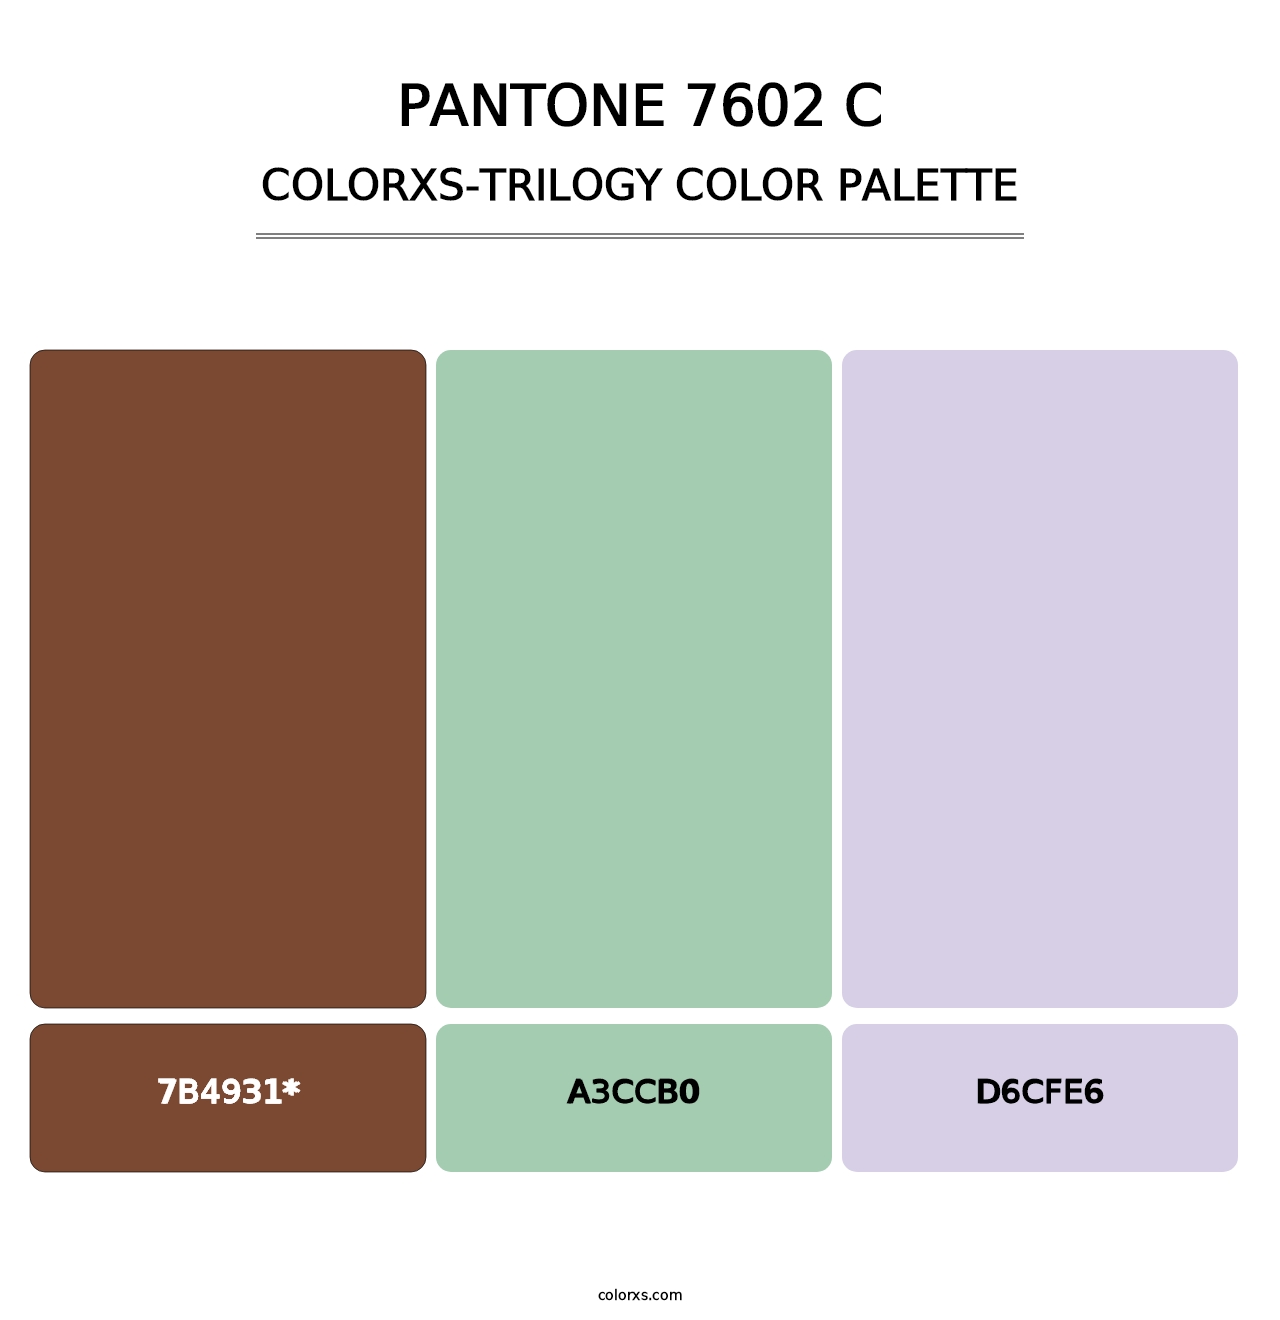 PANTONE 7602 C - Colorxs Trilogy Palette